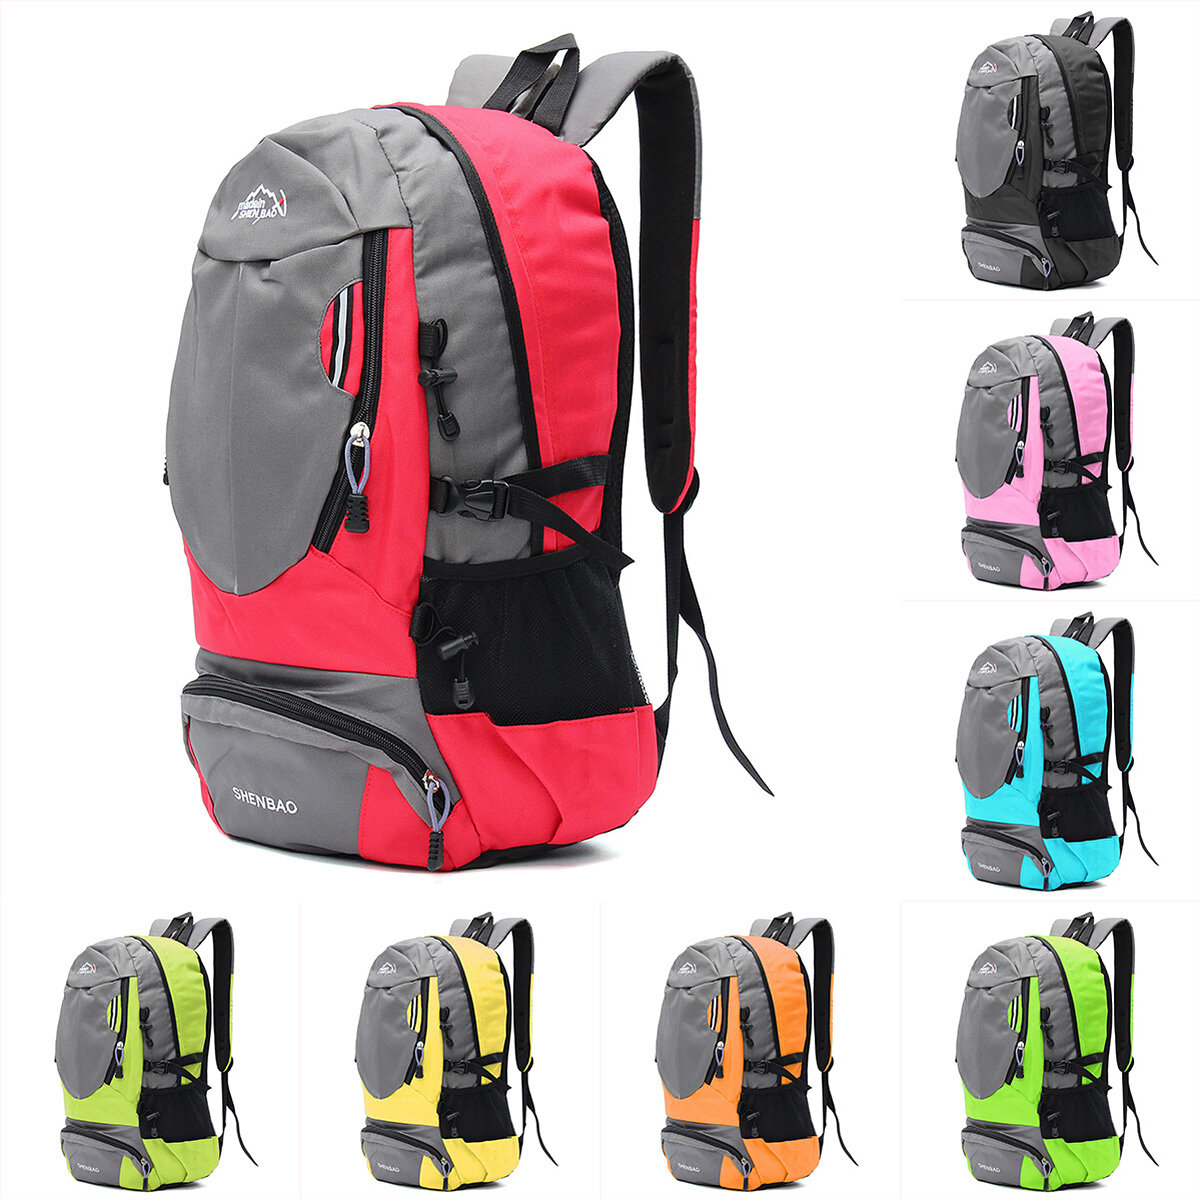 35L Campeggio sportivo zaino da viaggio trekking spalla zaino borsa per portatile pacchetto unisex